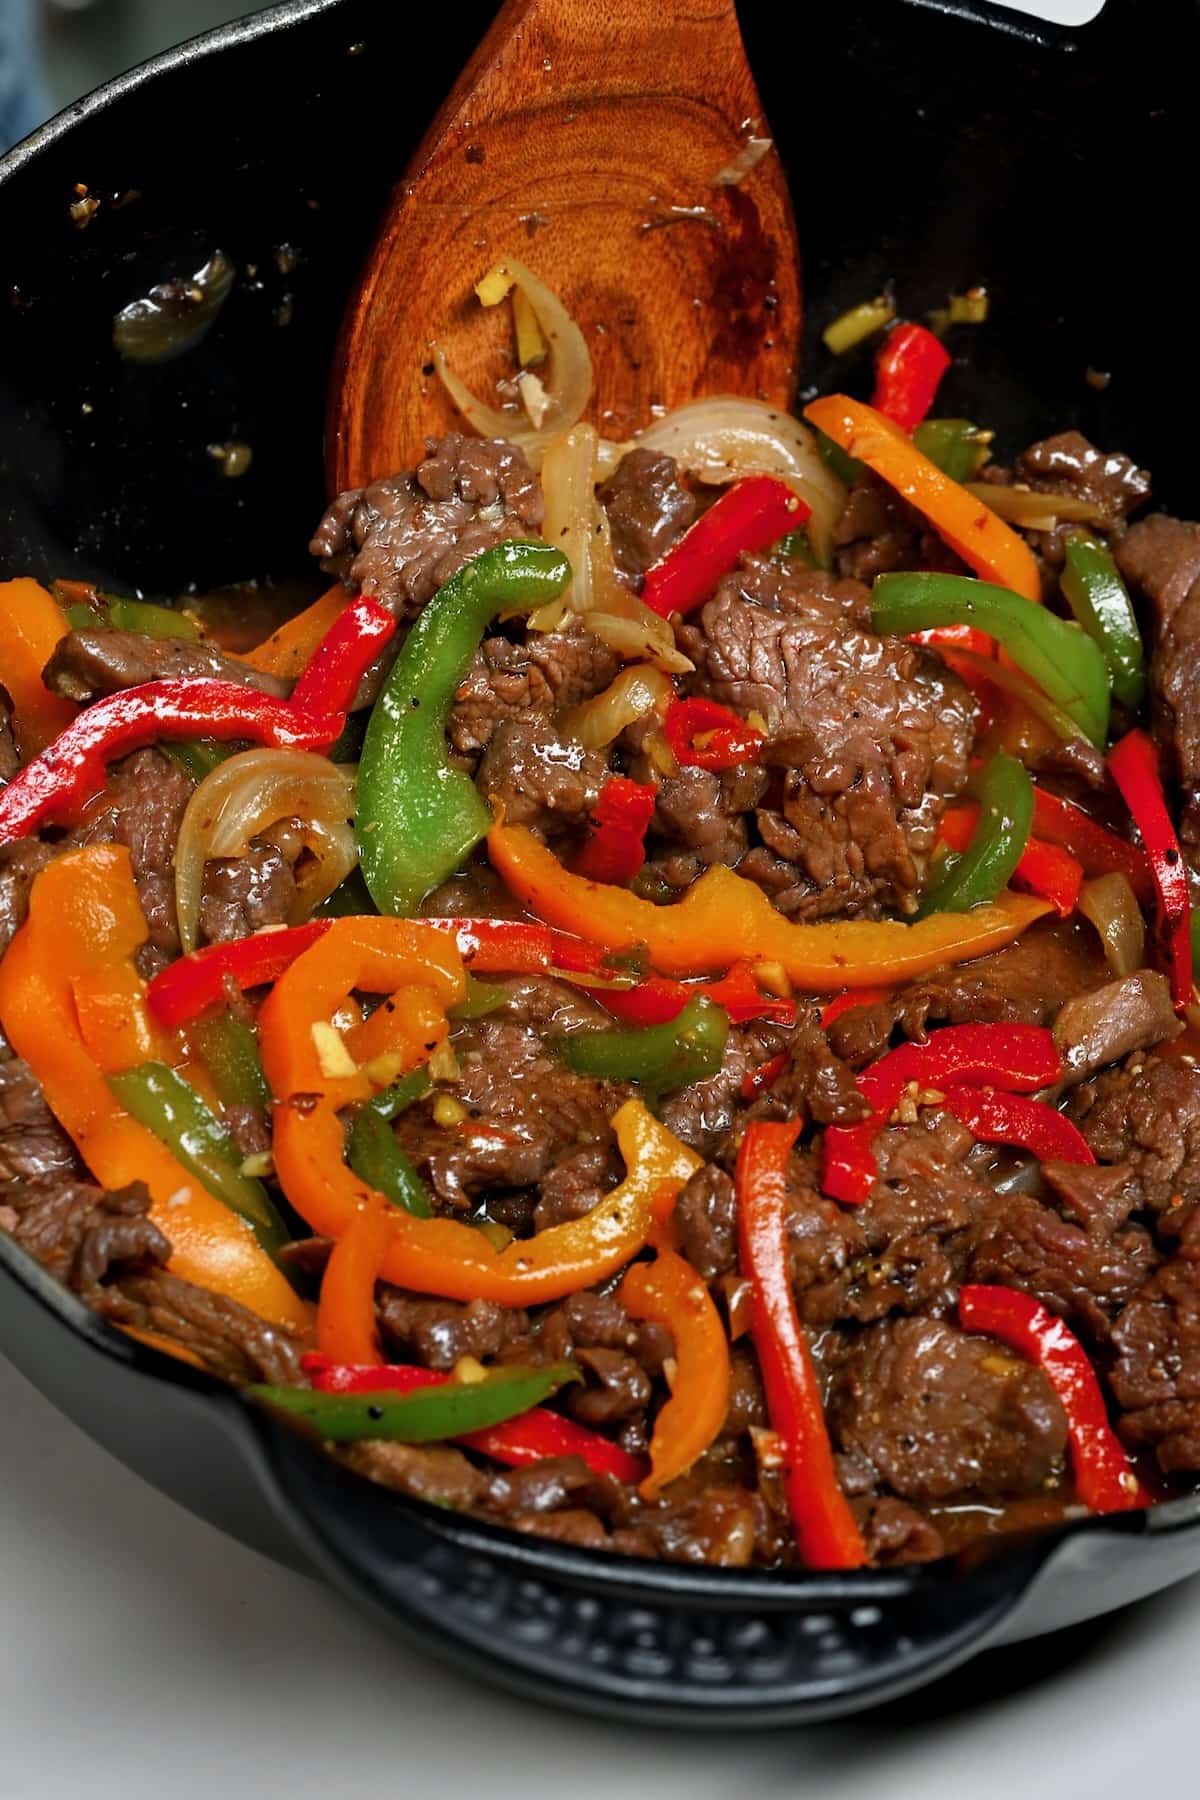 Pepper steak prepared in a wok